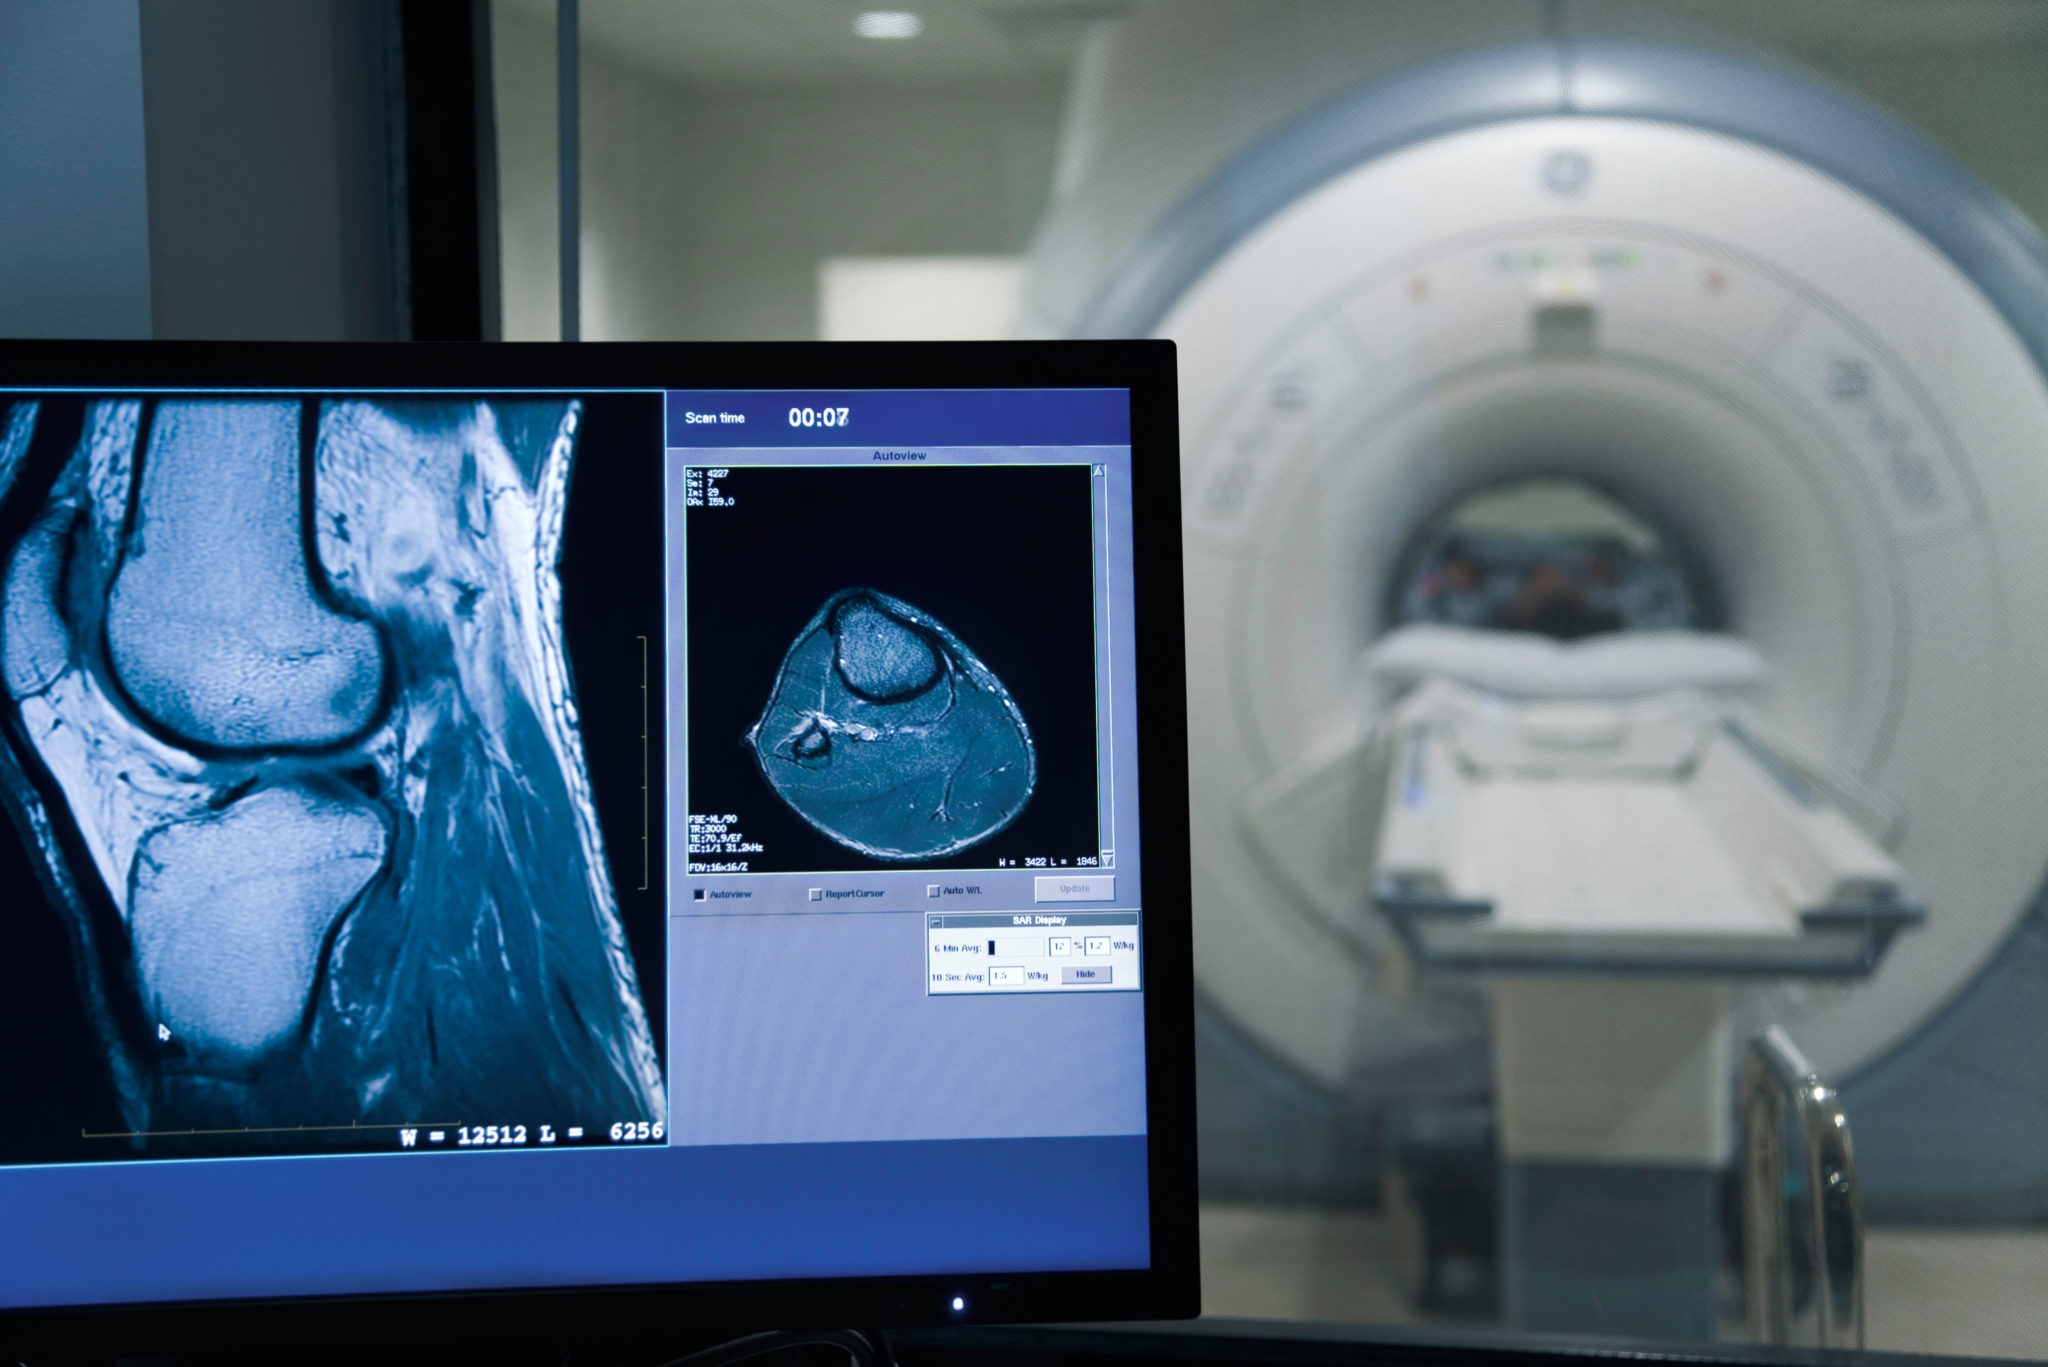 Ein Magnetresonanztomograf ist teuer, deshalb wollen Spitäler solche Diagnosegeräte gut auslasten. Doch: Damit erhöhen sie die Gesundheitskosten.